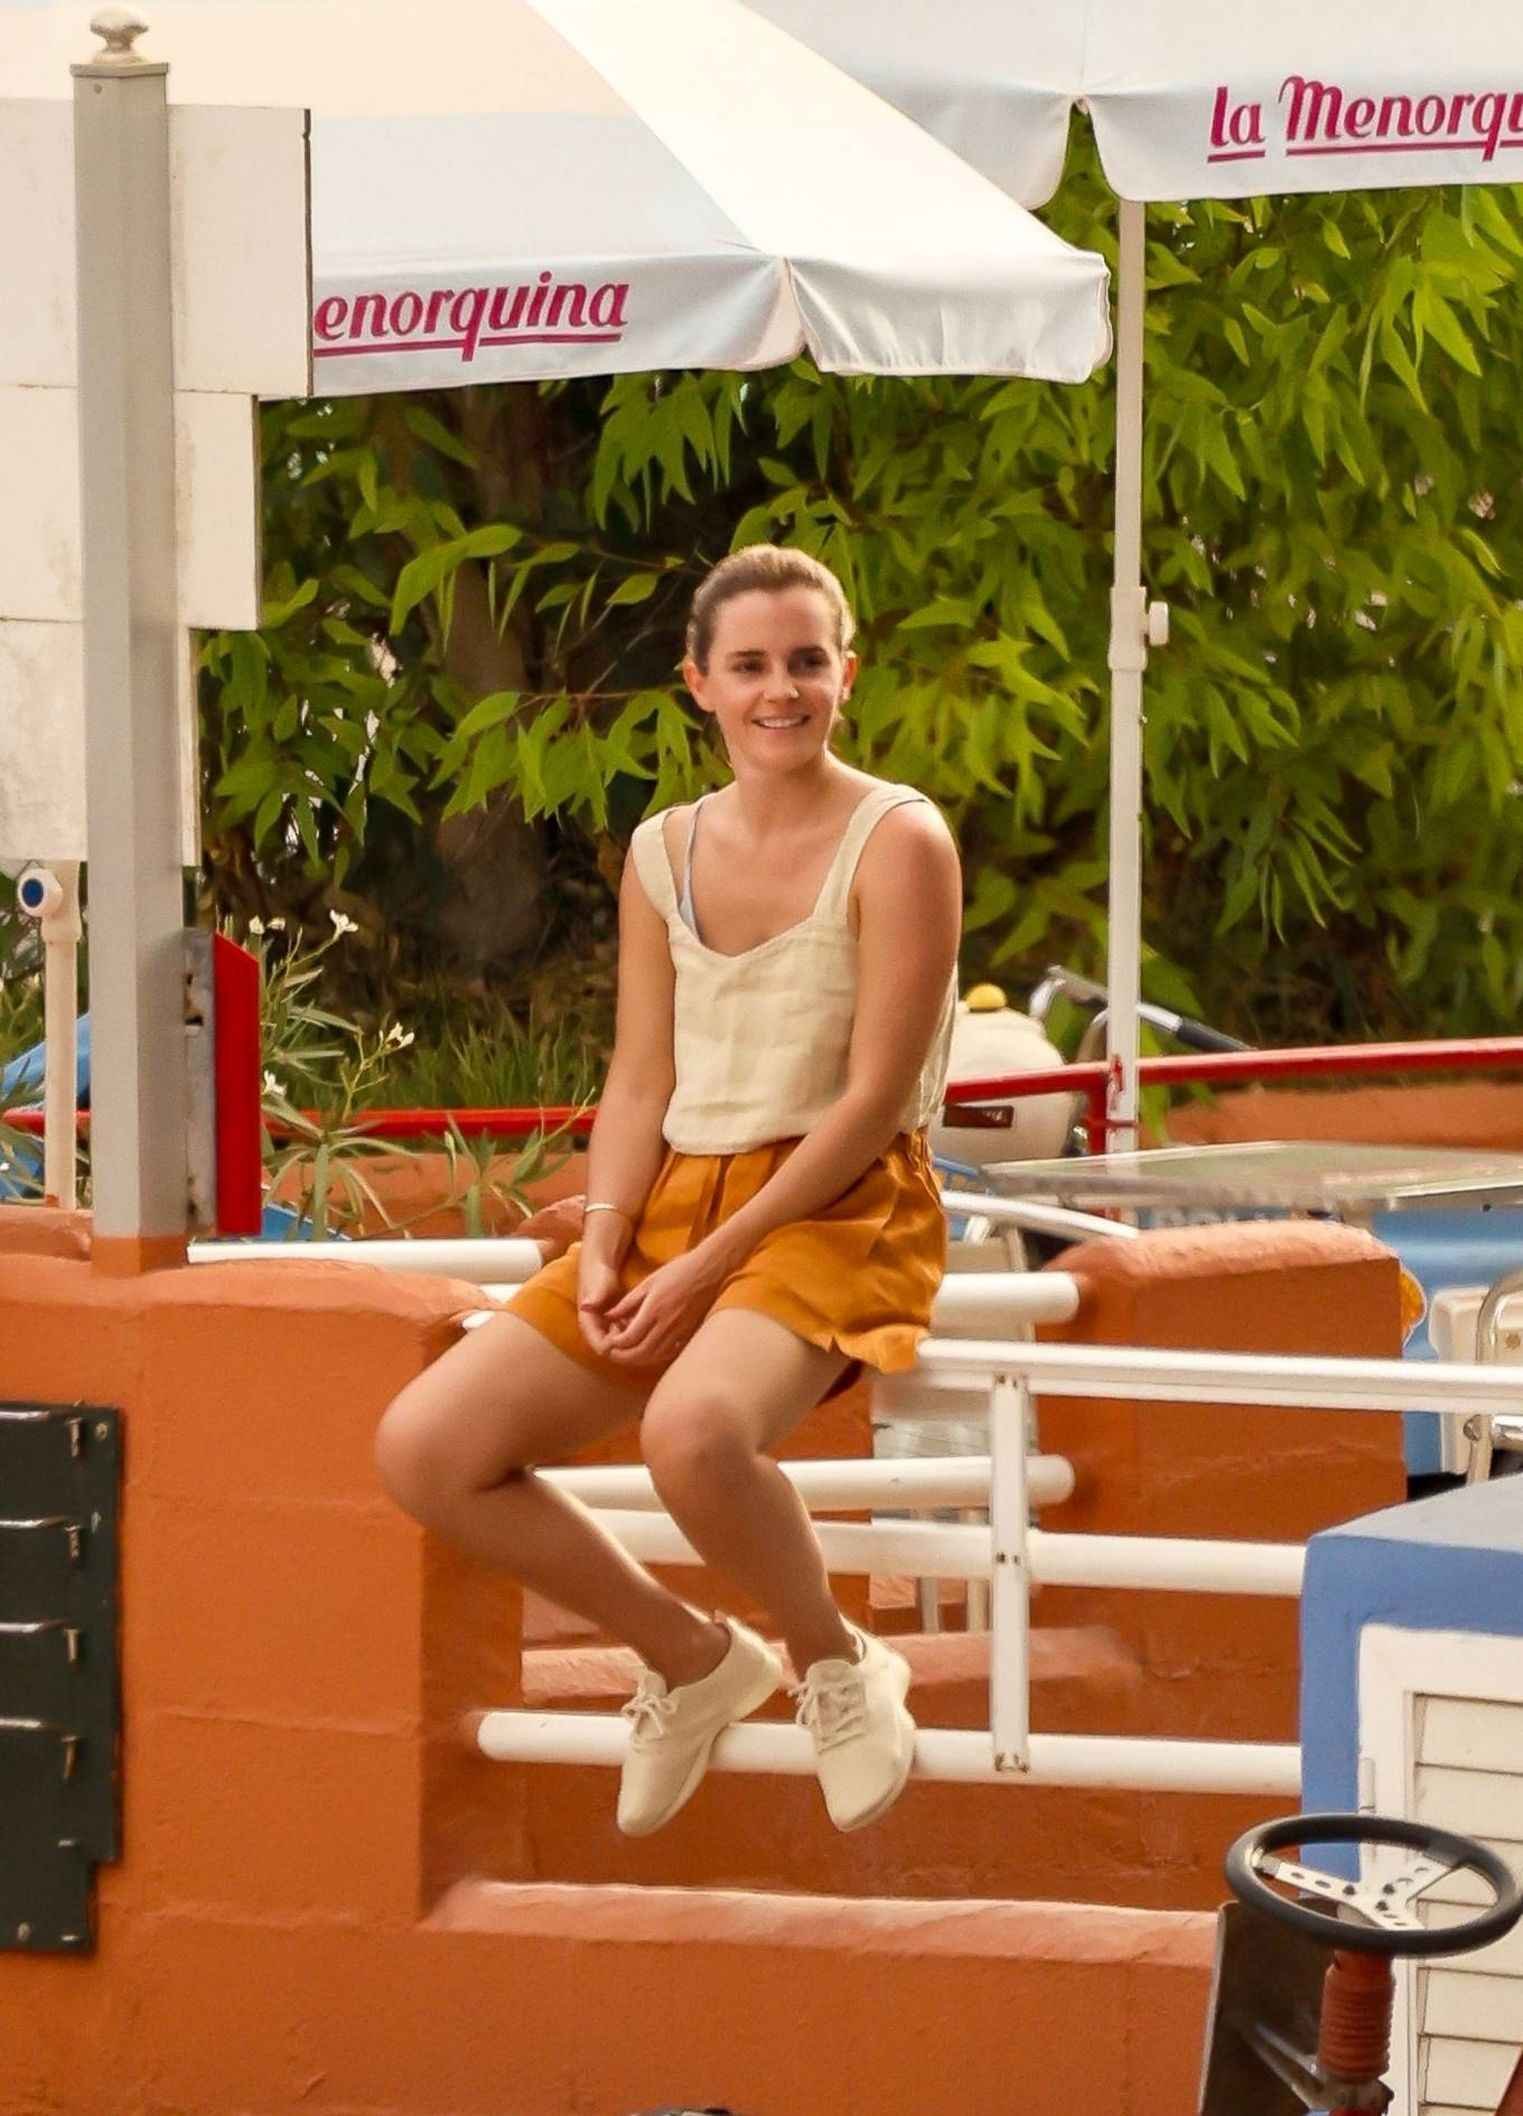 Emma Watson sexy à Ibiza